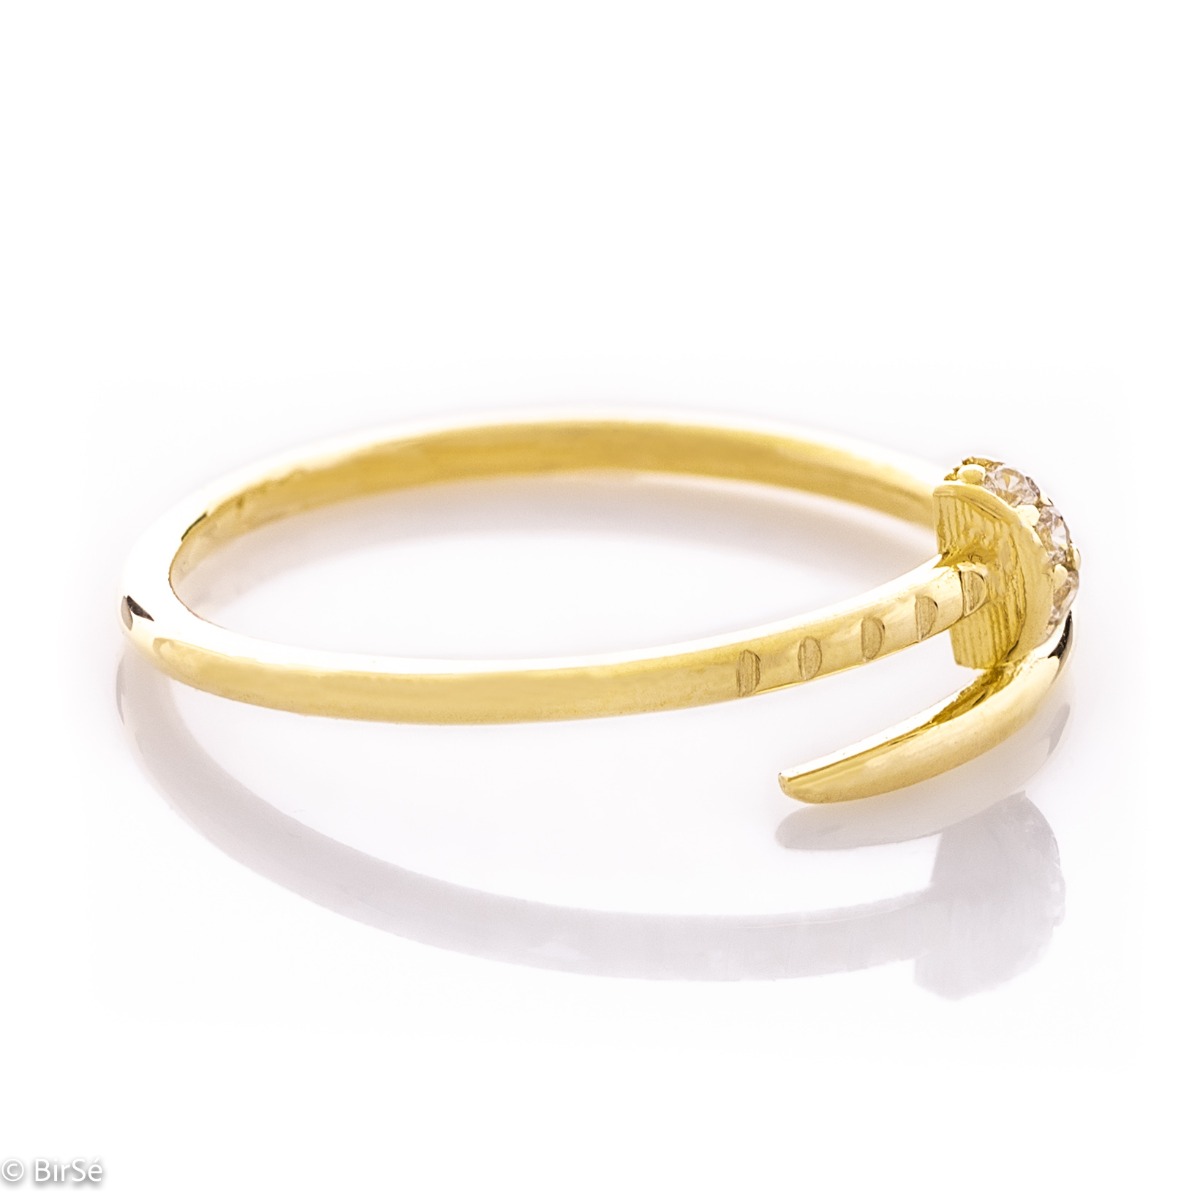 Златен пръстен - Пирон